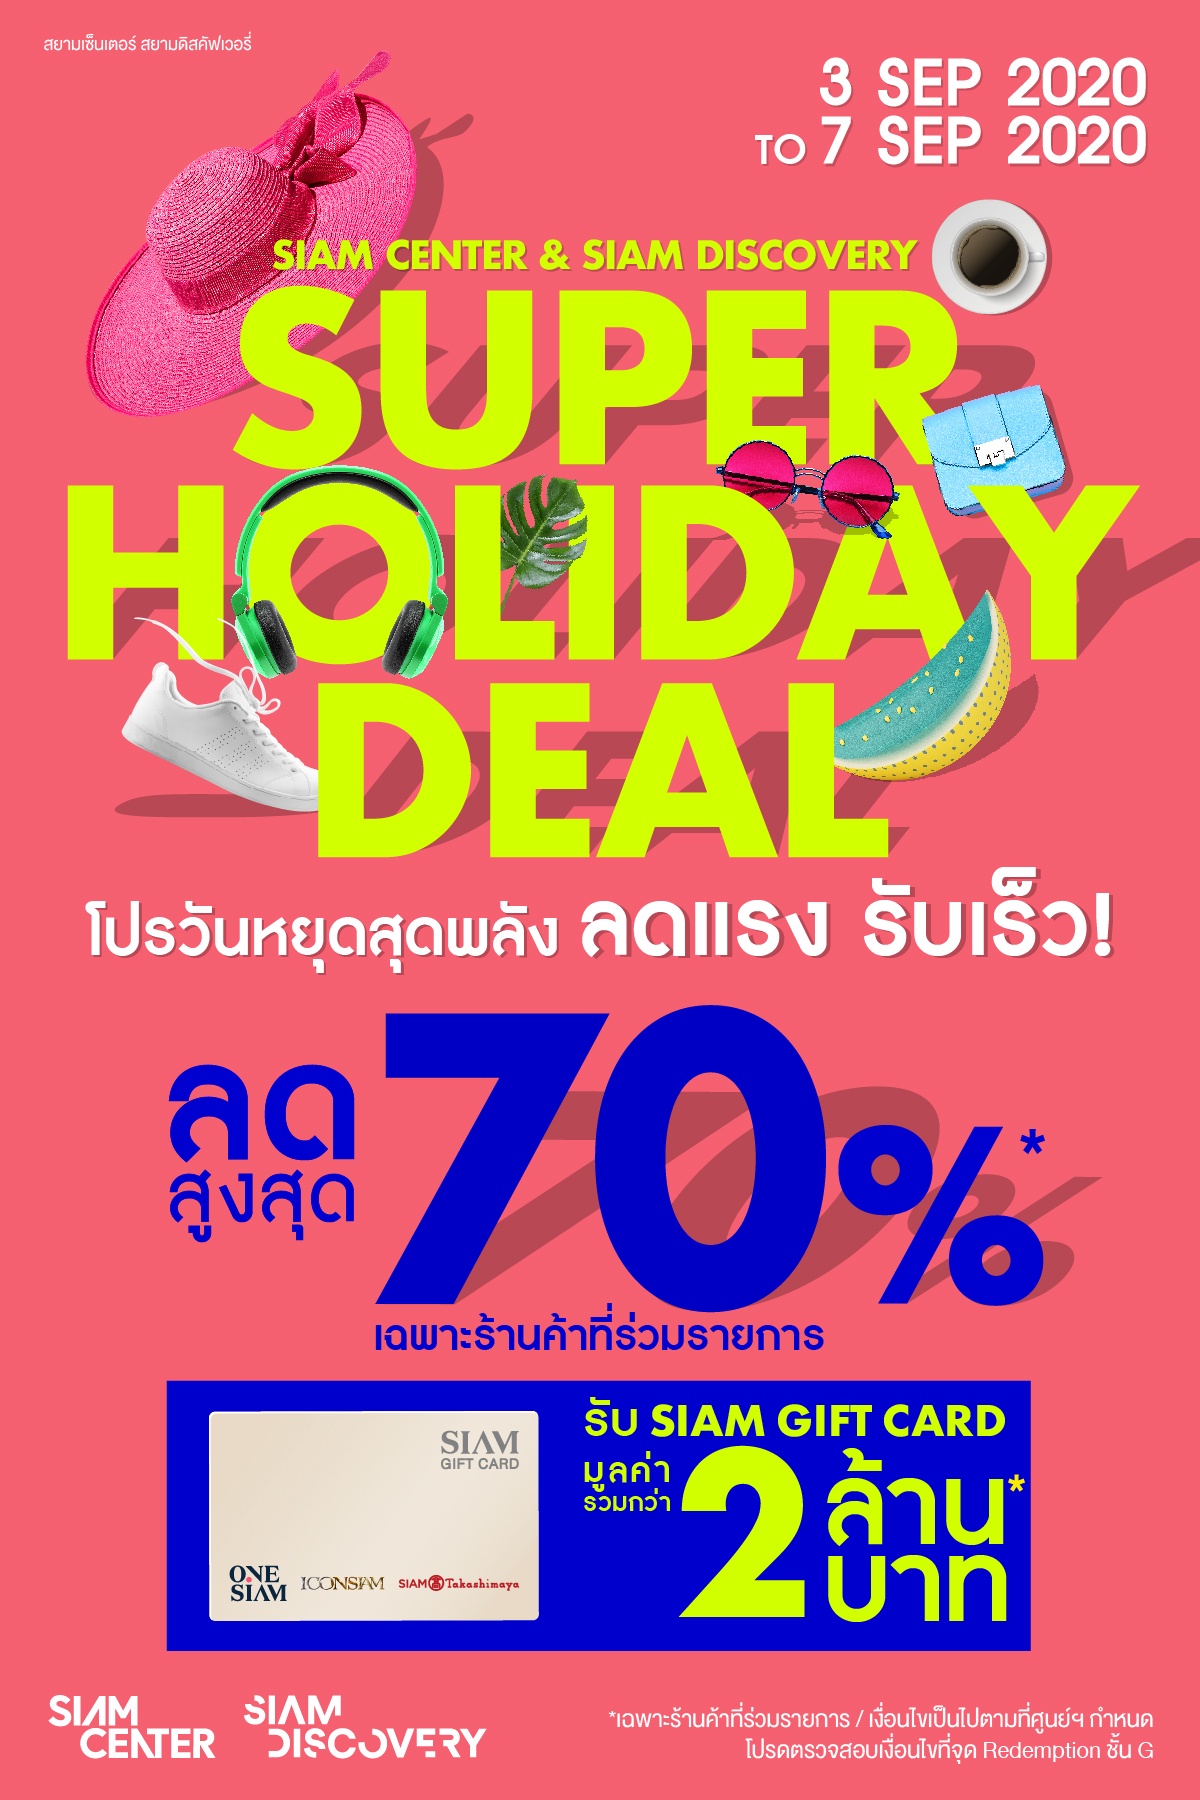 หนุ่มสาวแชร์ไอเดีย ฉลาดเลือก! ฉลาดช้อป! ในแคมเปญ Siam Center Siam Discovery Super Holiday Deal